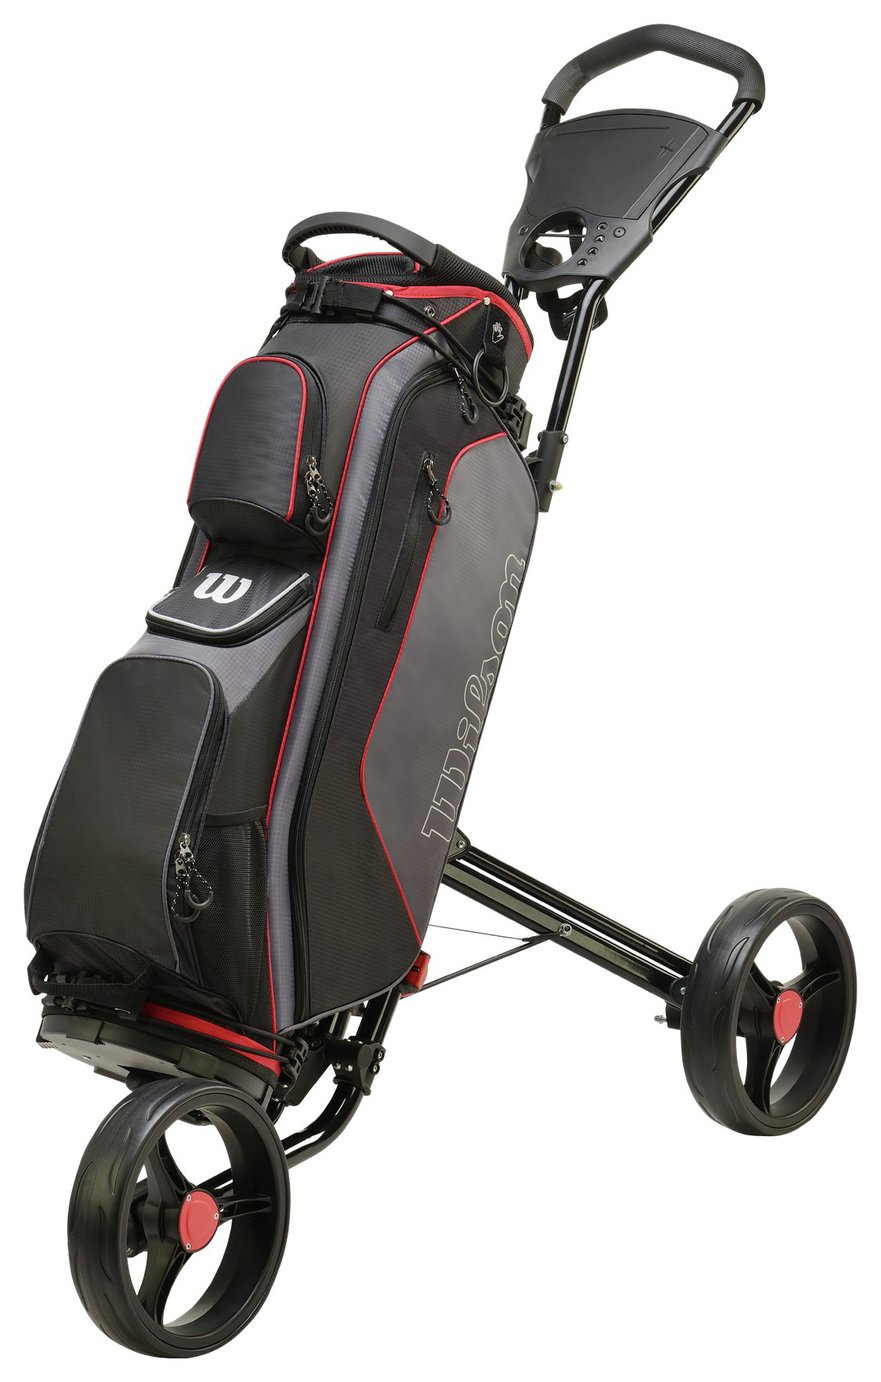 Wilson ProStaff Golf Cart Bag Reviews